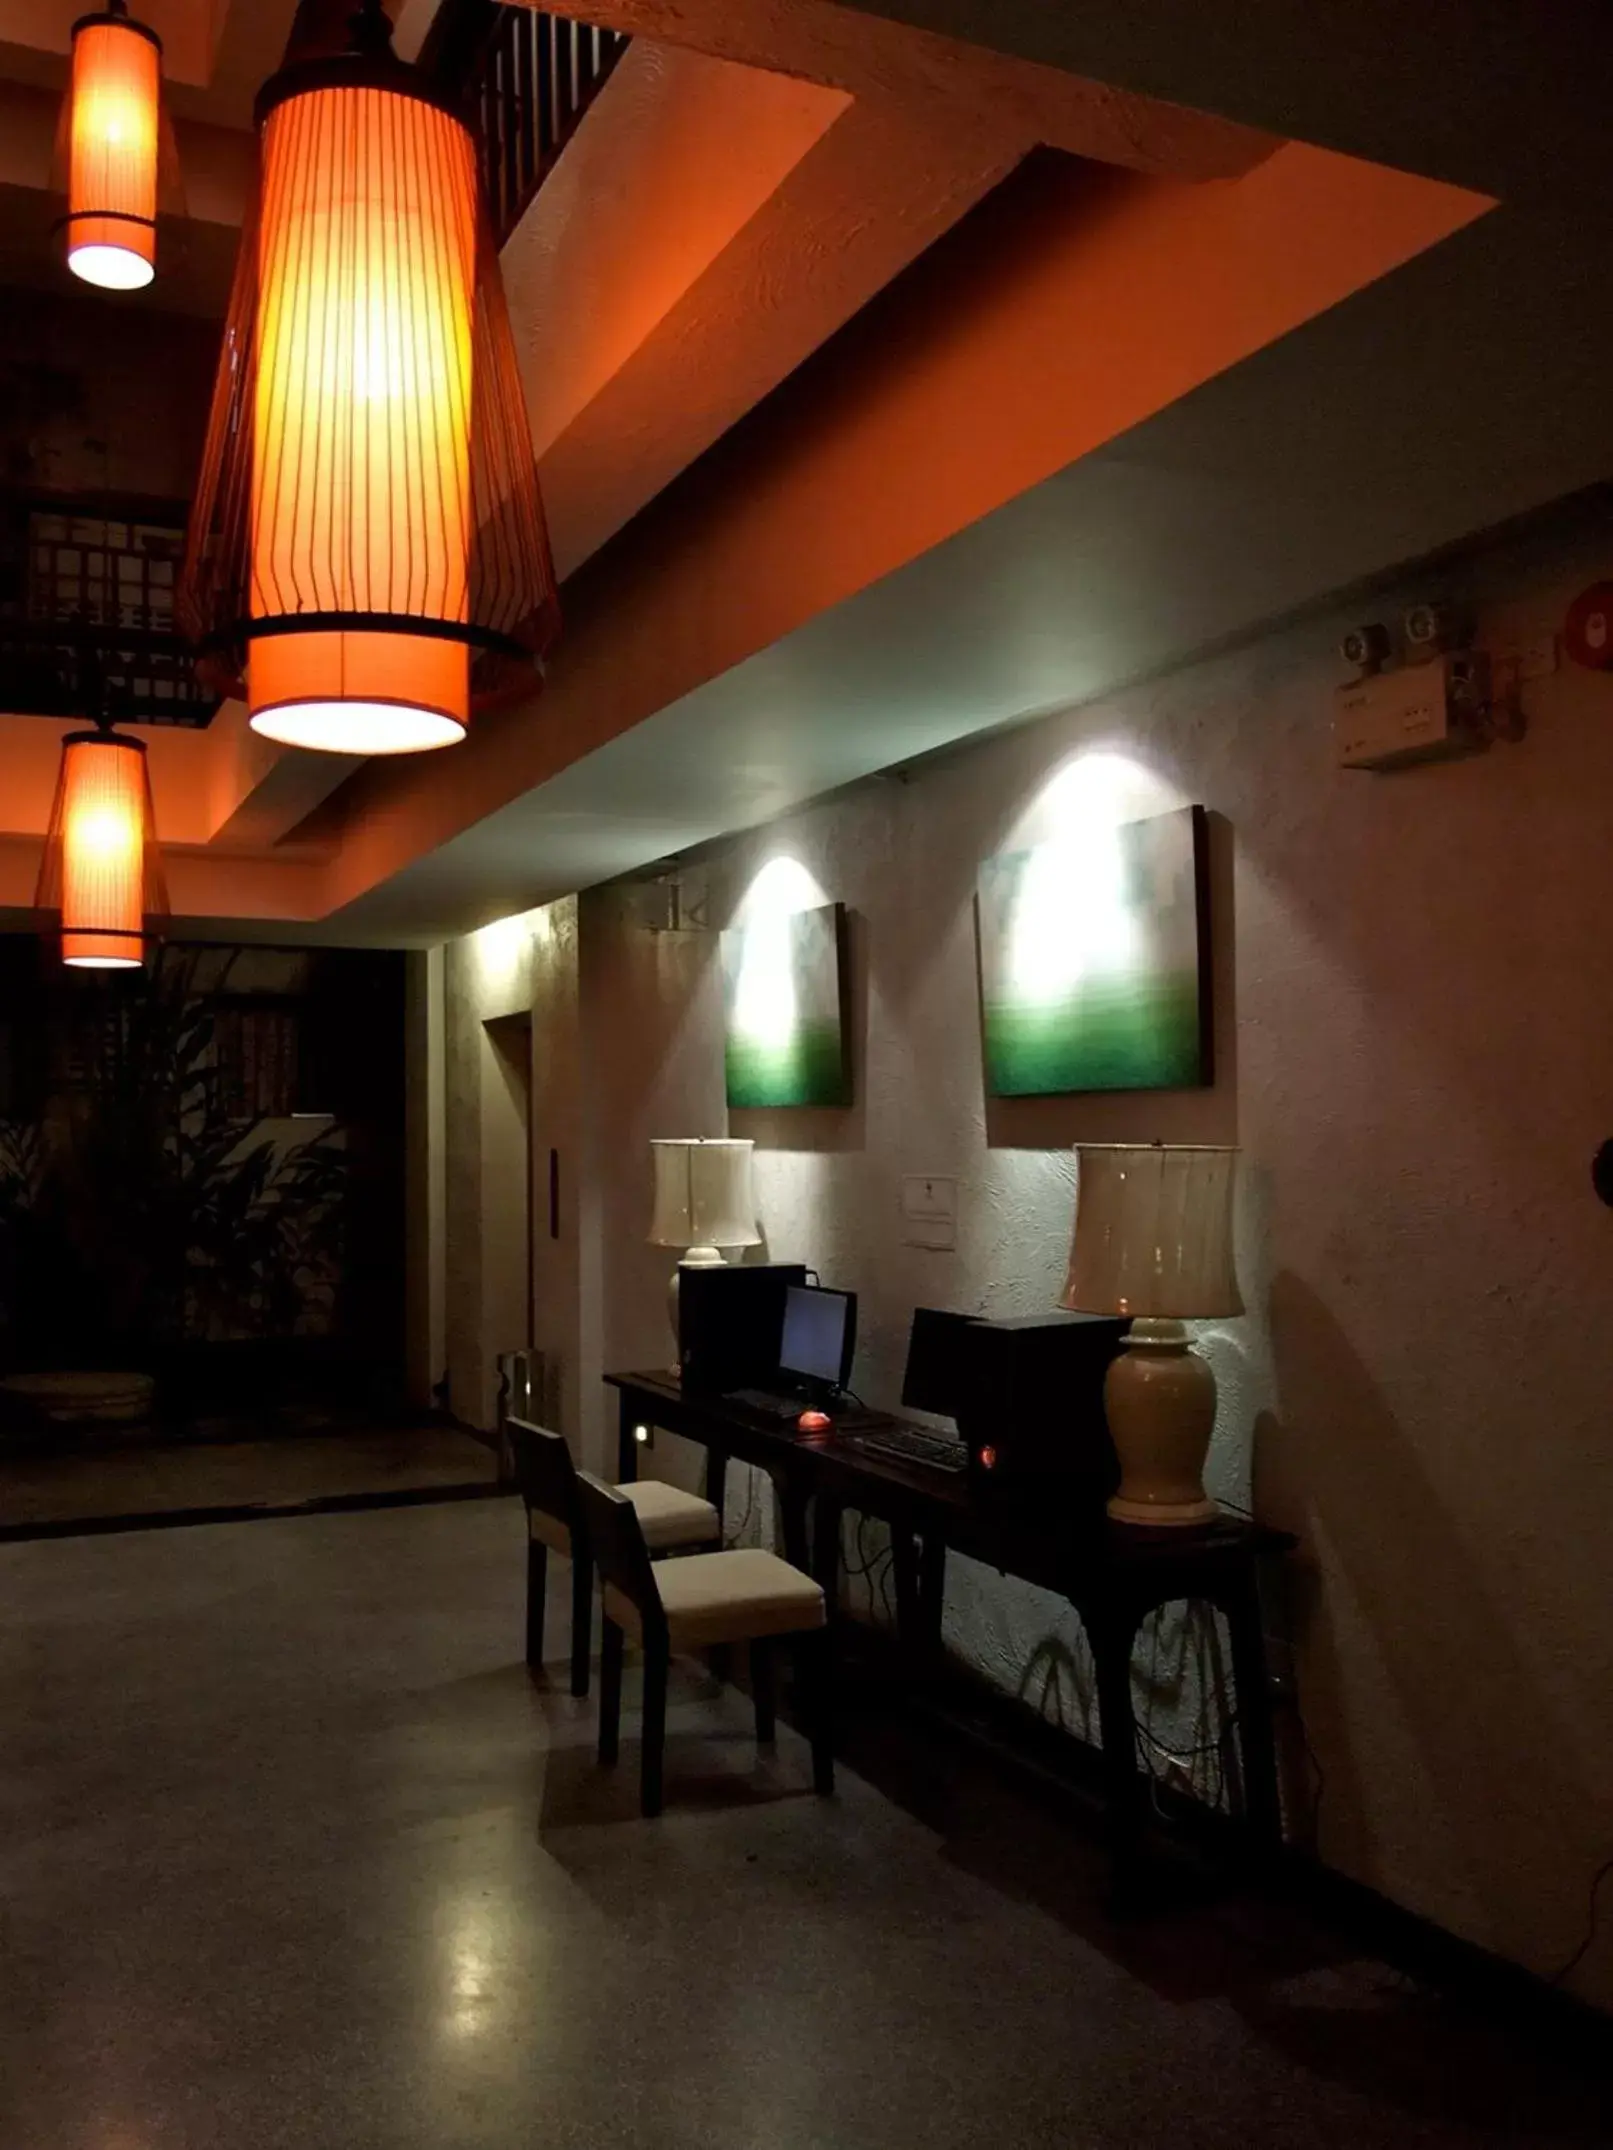 Lobby or reception in De Lanna Hotel